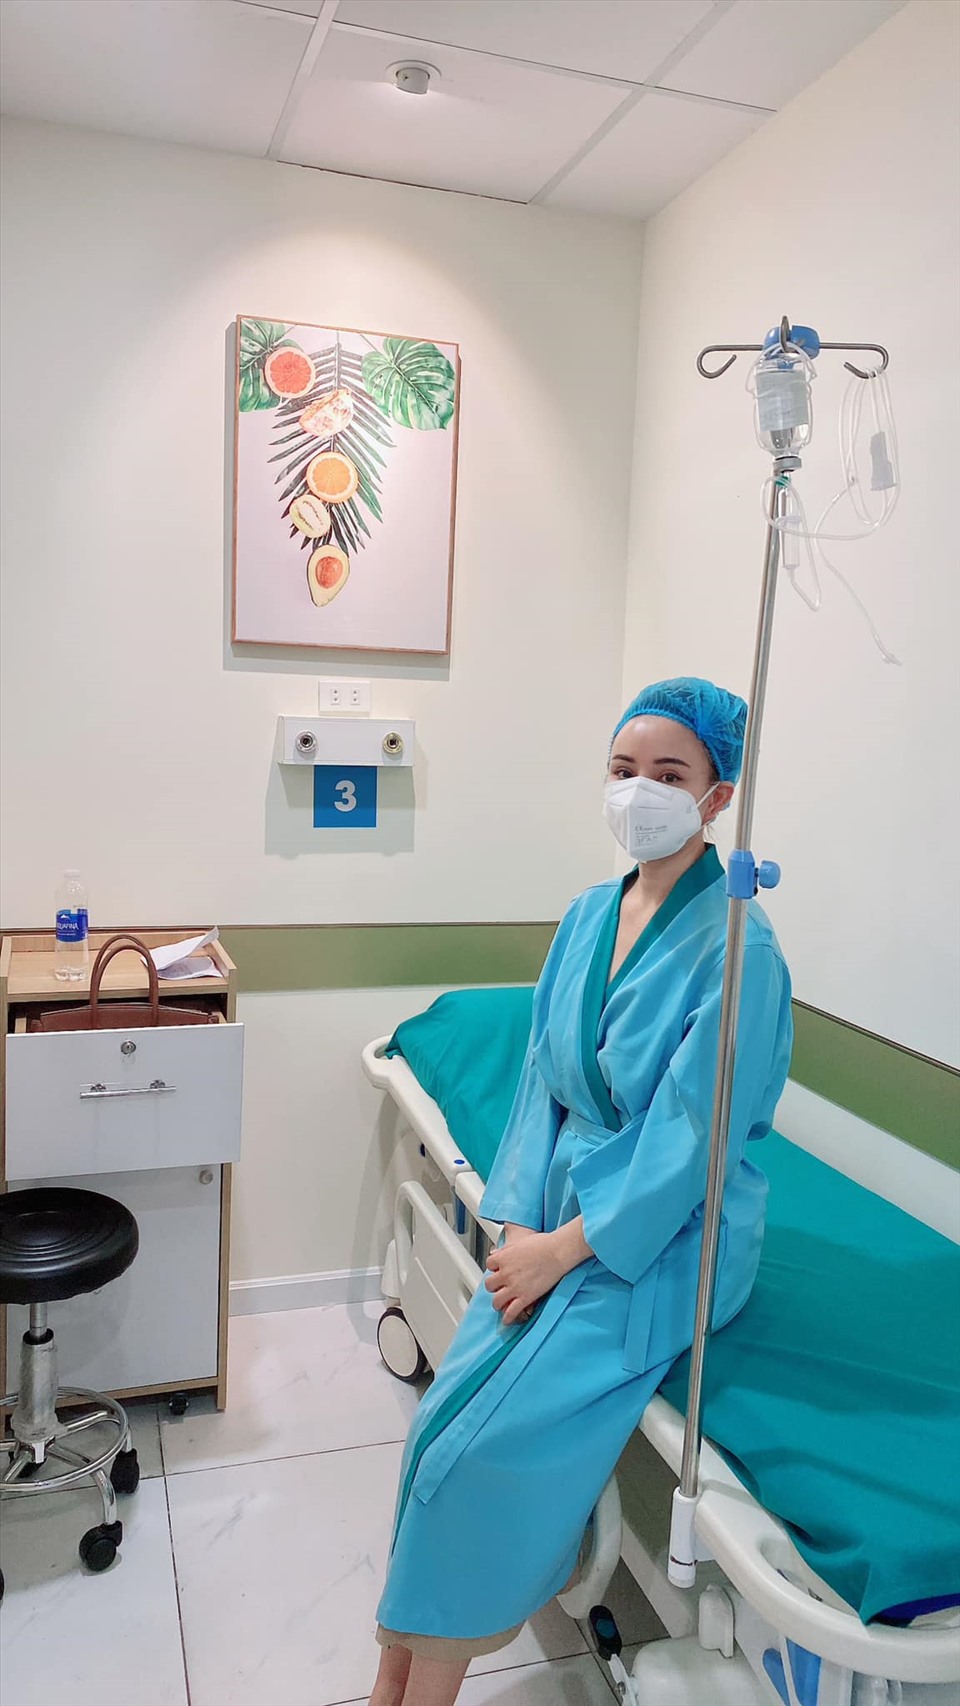 Vy Oanh chia sẻ hình ảnh trong bệnh viện chuẩn bị phẫu thuật tuyến giáp. Ảnh: Nhân vật cung cấp